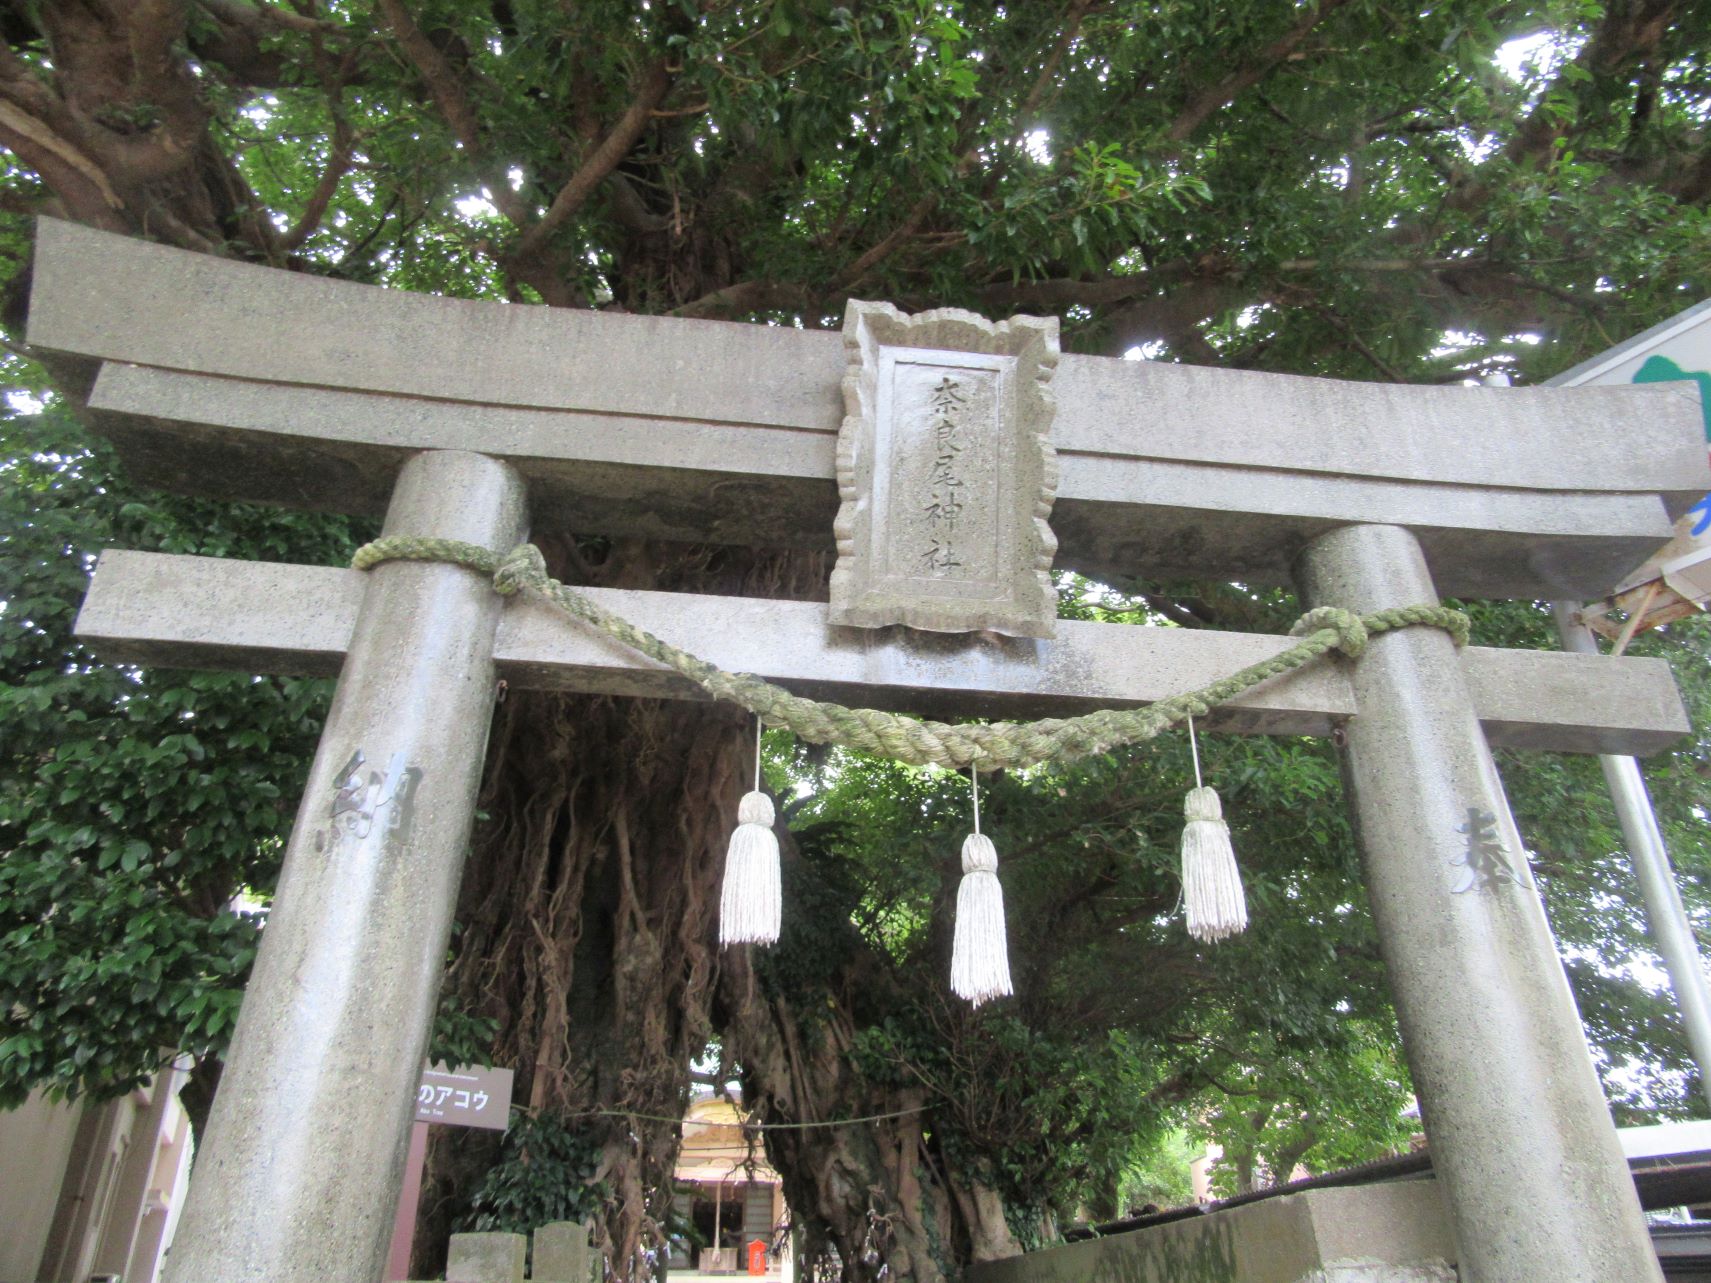 長崎県南松浦郡新上五島町の奈良尾神社の鳥居と、立派な『奈良尾のアコウ』。